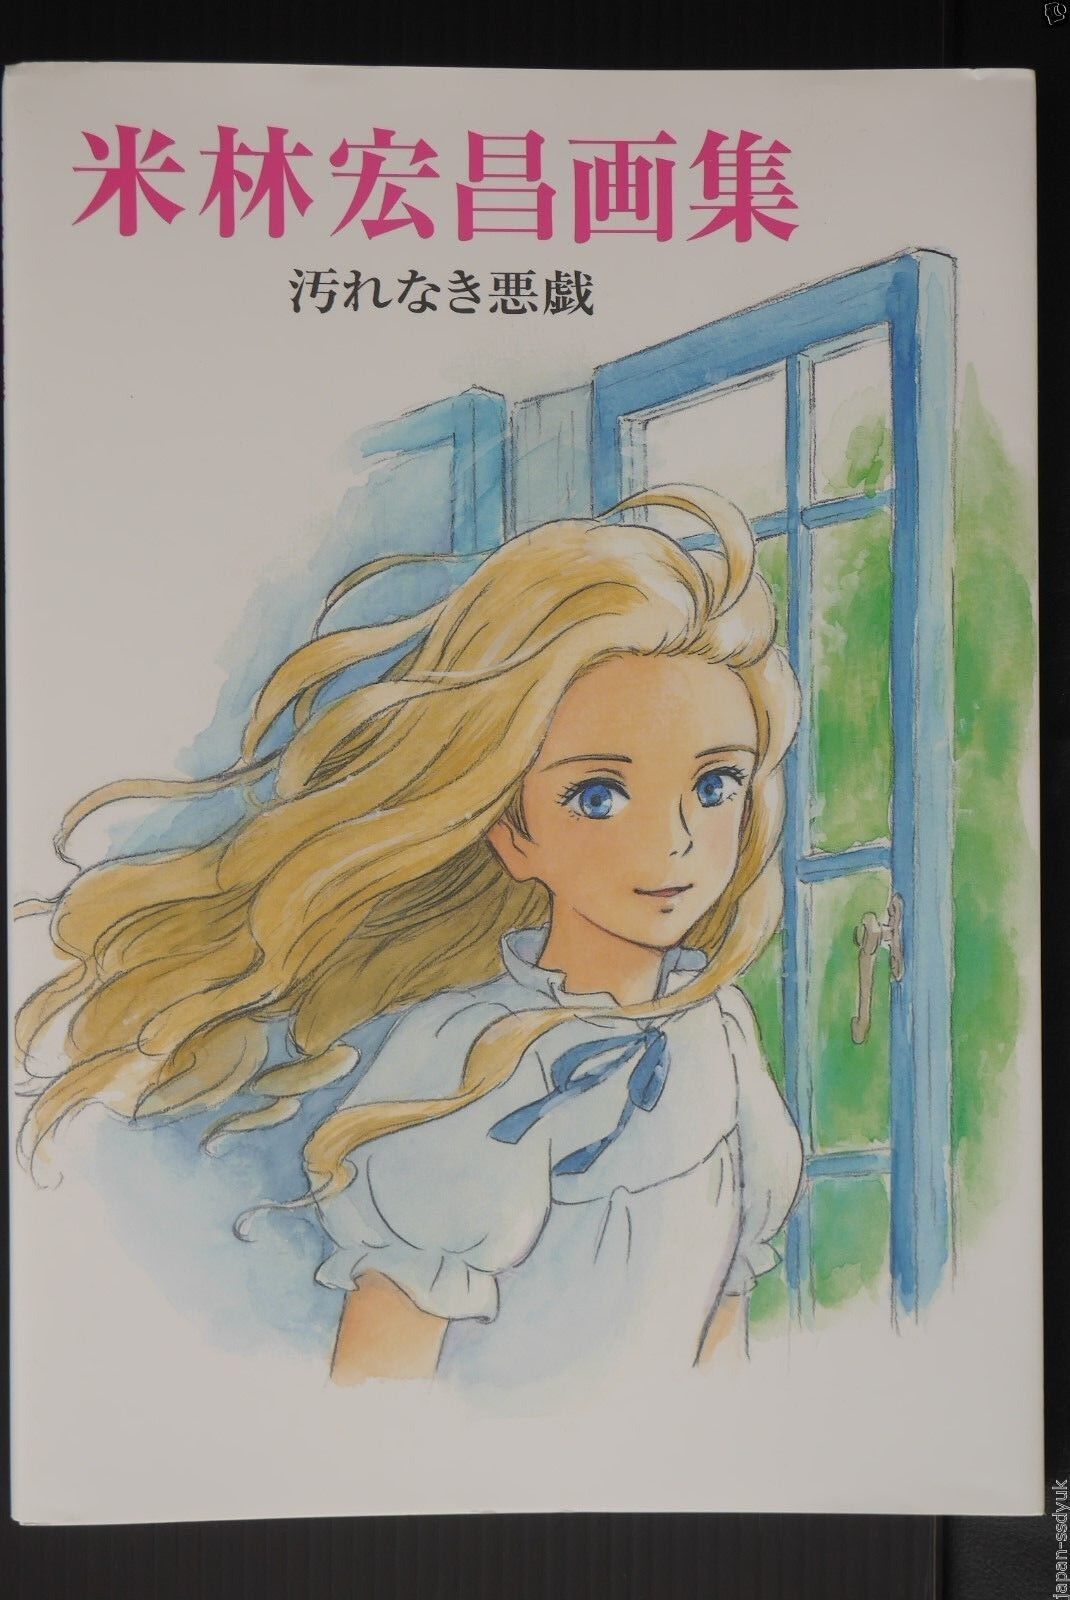 Studio Ghibli: Hiromasa Yonebayashi Art Book: Kegarenaki Itazura (Arrietty etc.)